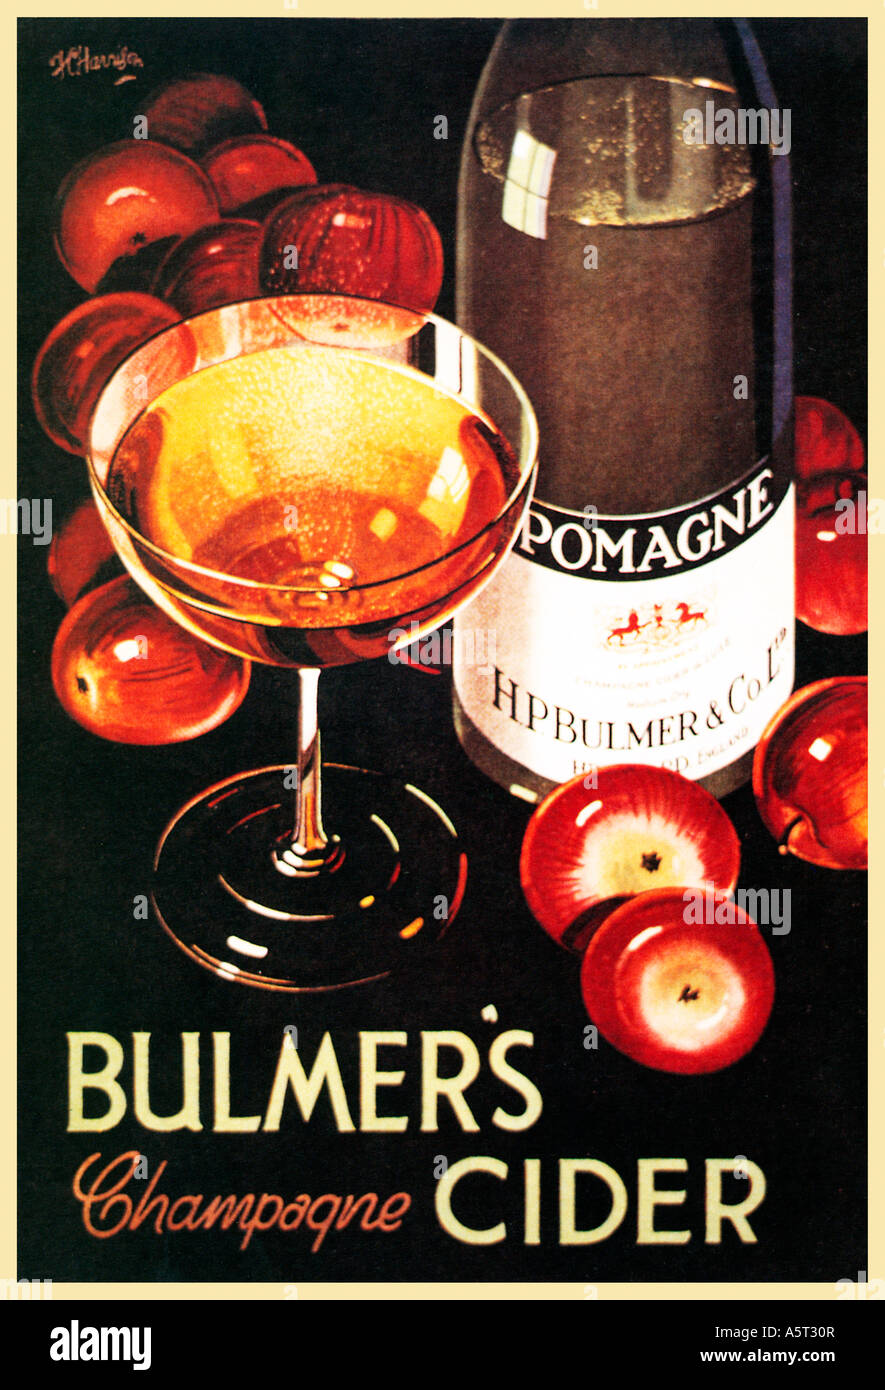 Le Cidre Bulmers Champagne 1934 affiche pour le marché de l'anglais comme Pomagne cidre vendu Banque D'Images